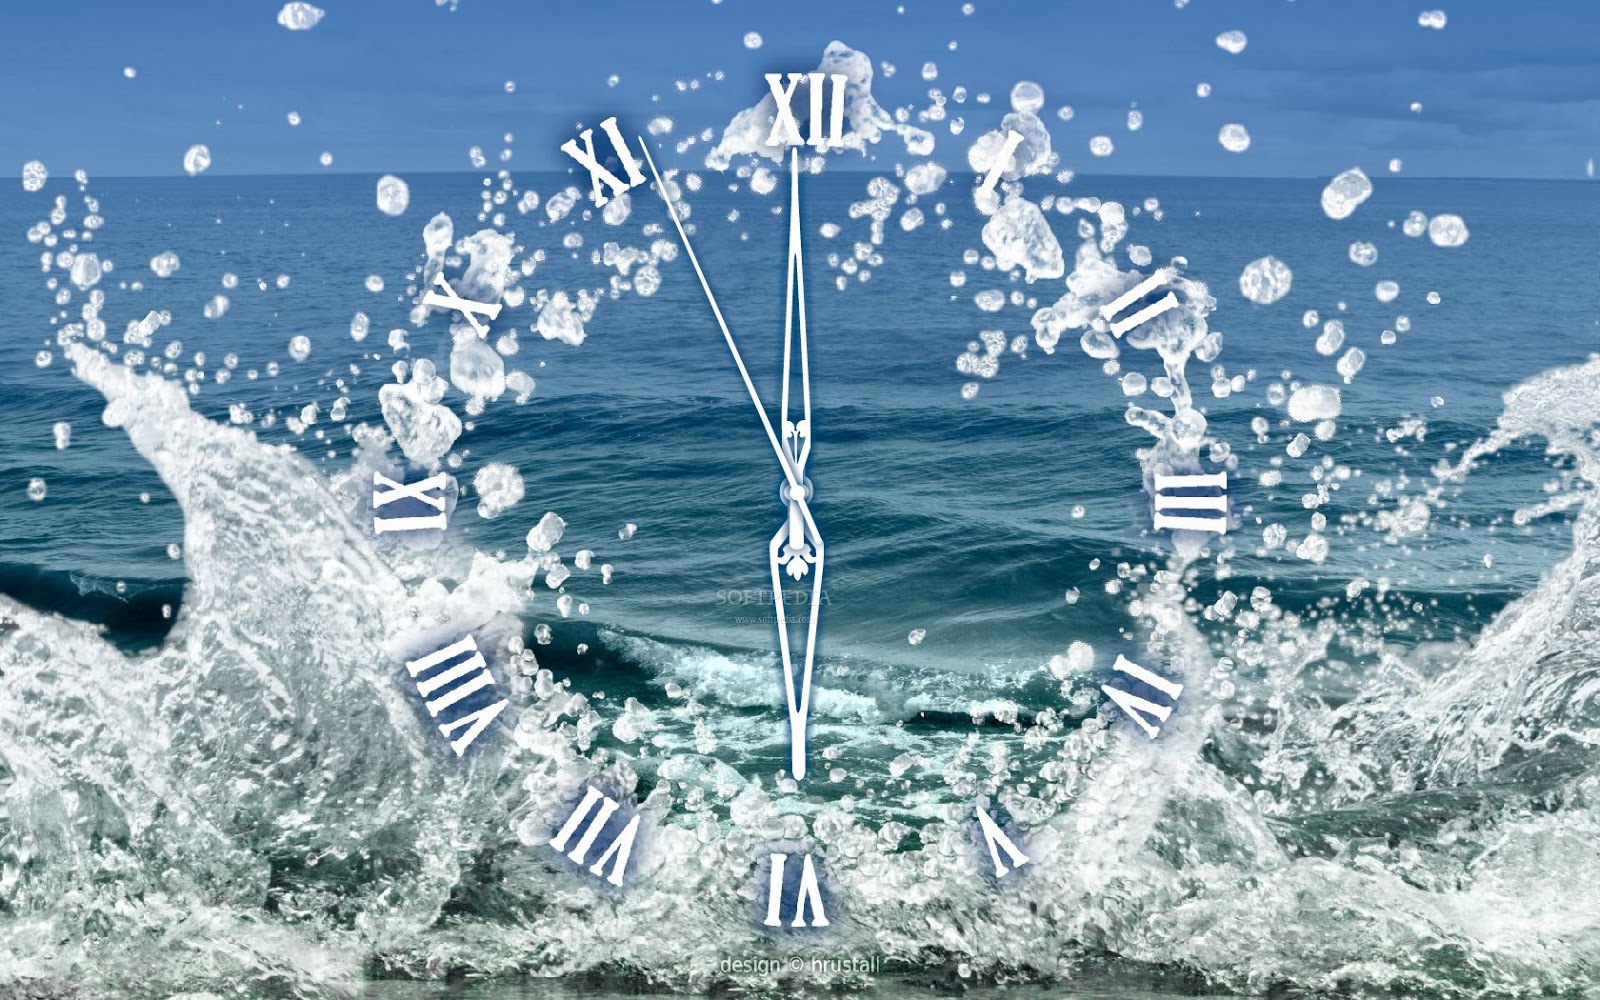 Часы и вода